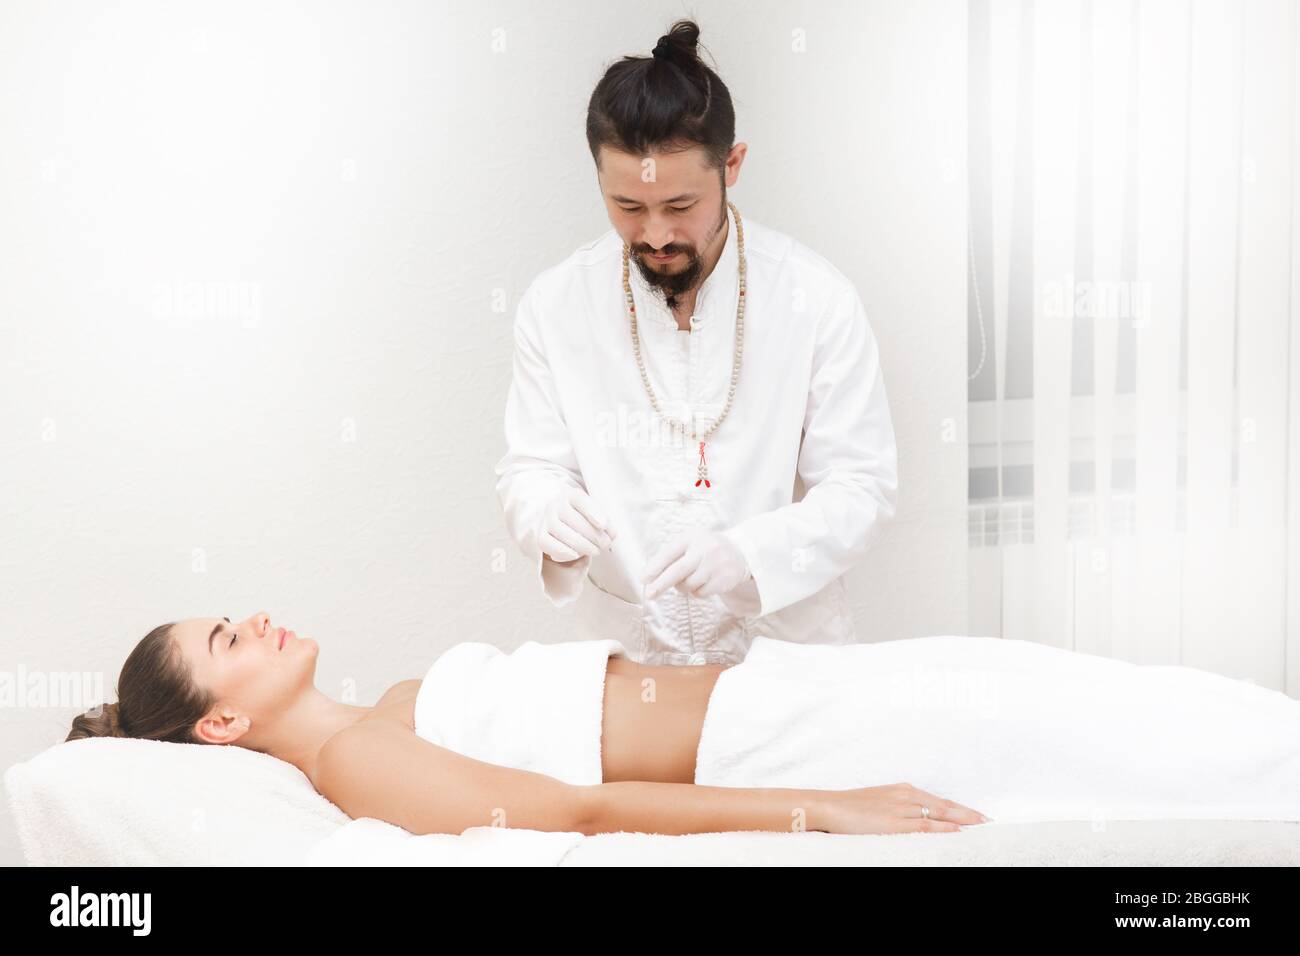 Médecin de médecine orientale faisant des estomacs d'acupuncture pour soulager la douleur d'estomac d'une femme. La femme aime l'acupuncture Banque D'Images